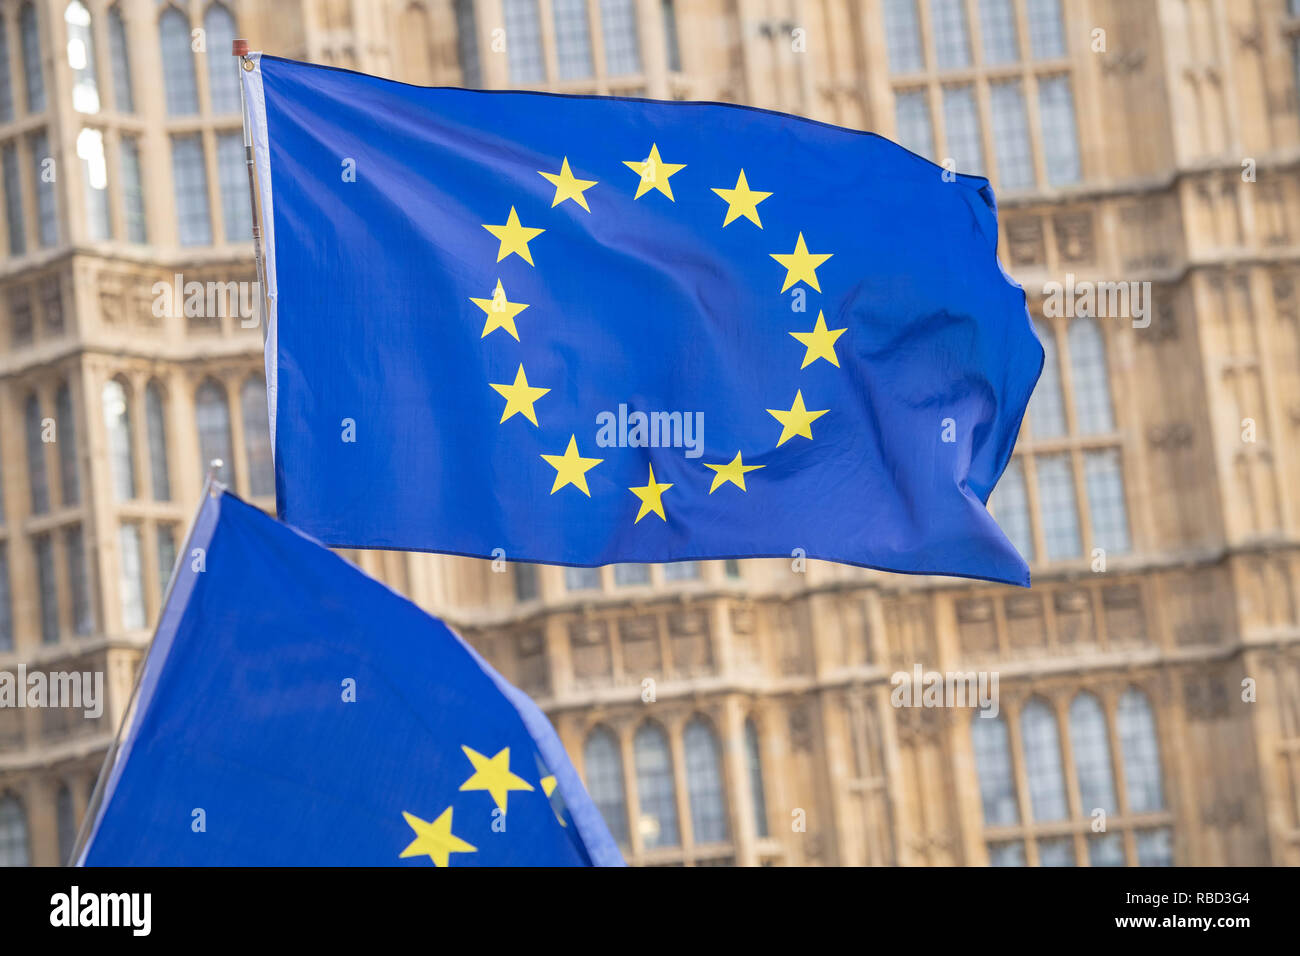 Londres, Royaume-Uni. 9 janvier 2019, des drapeaux européens situe en dehors de la Chambre des communes par les manifestants Brexit Crédit : Ian Davidson/Alamy Live News Banque D'Images